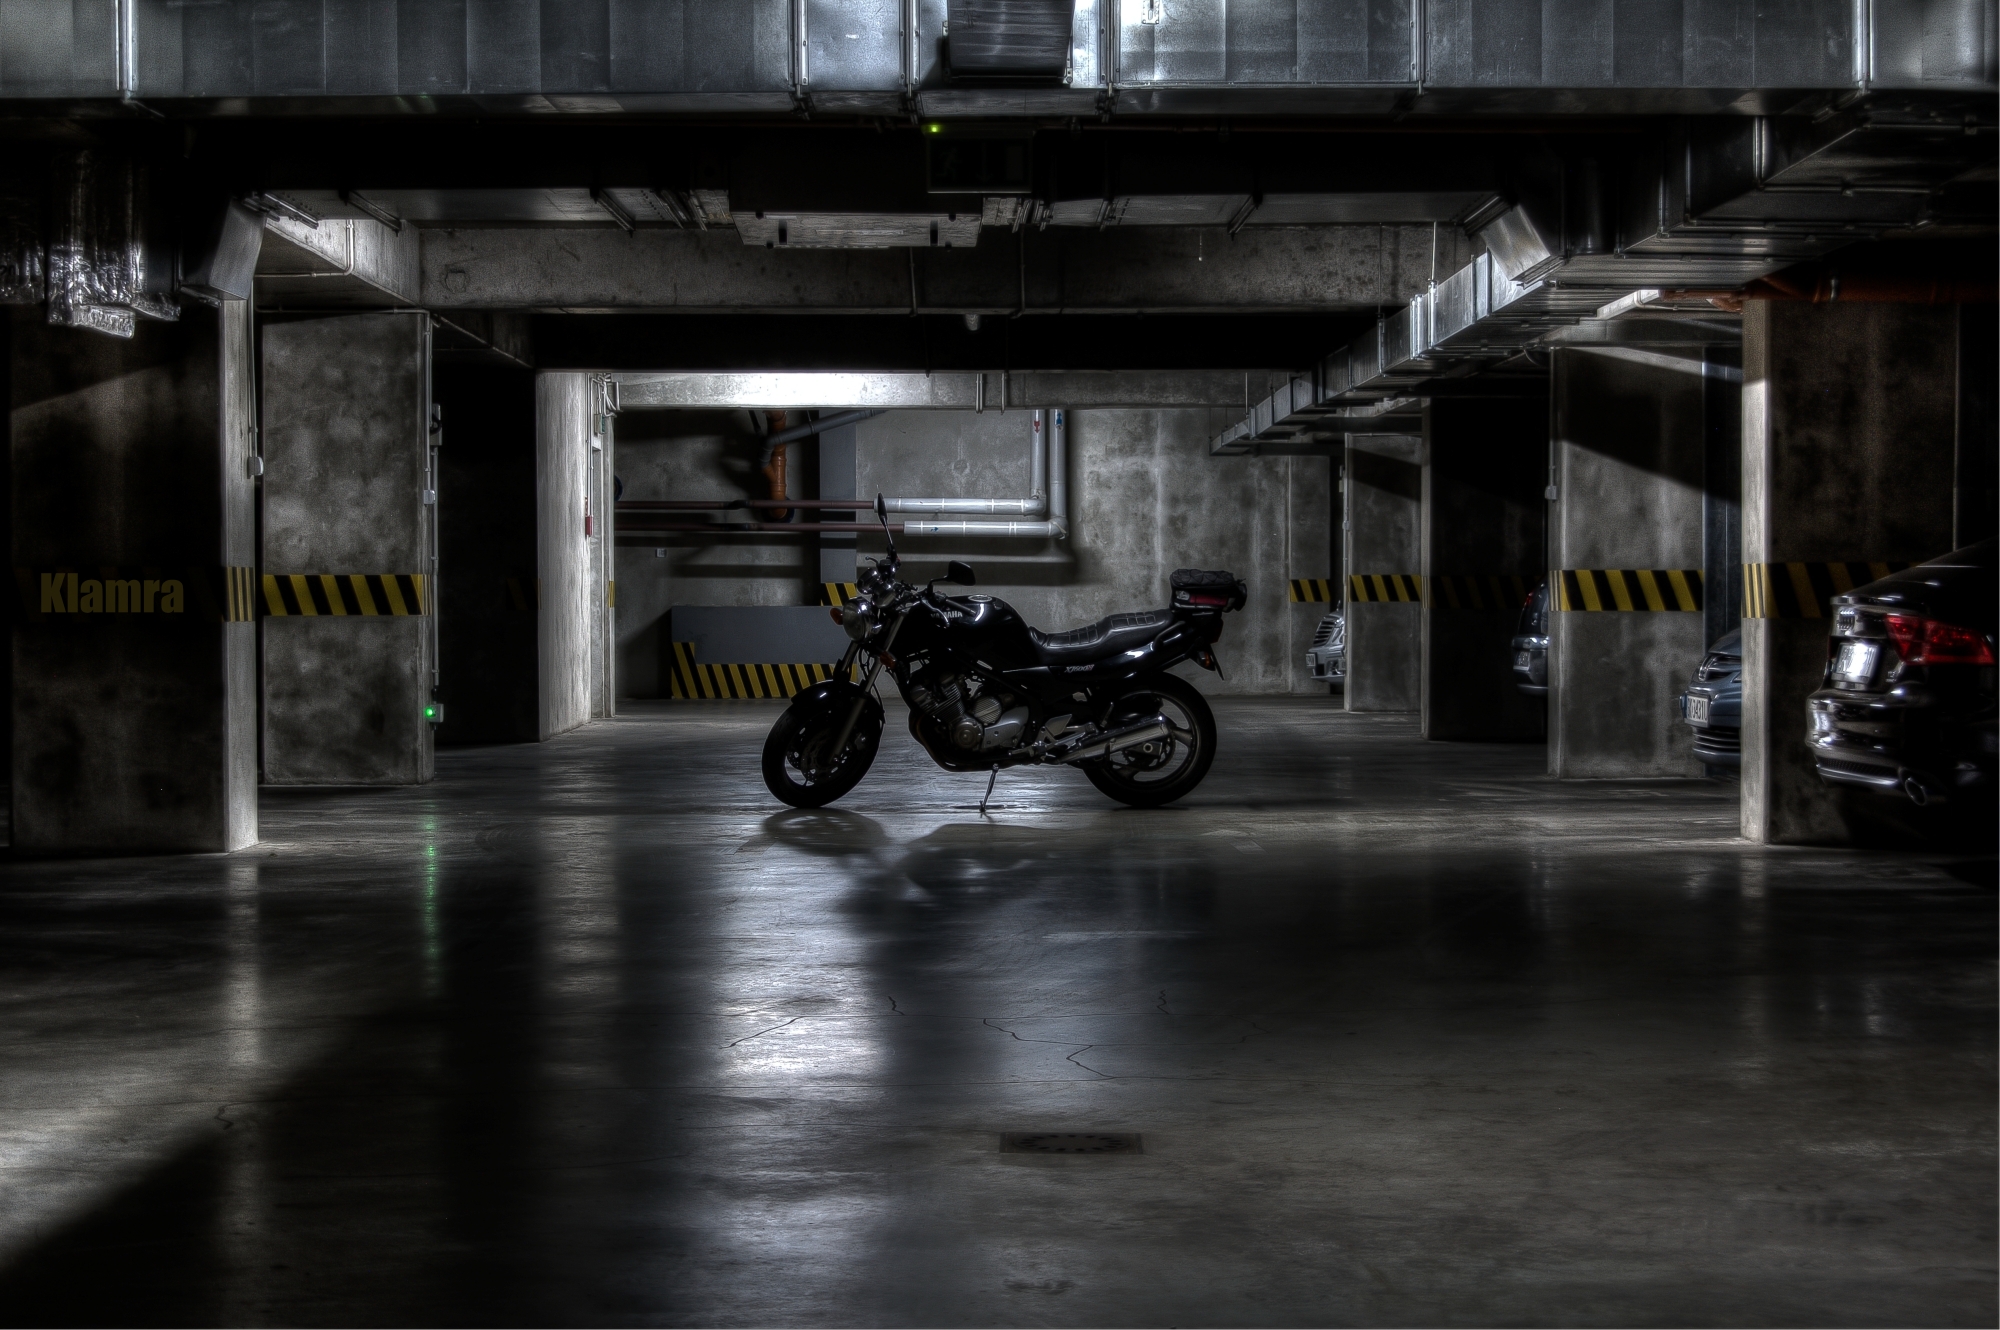 General 2000x1330 Yamaha Poland parking garage Katowice motorcycle vehicle XJ600N Japanese motorcycles